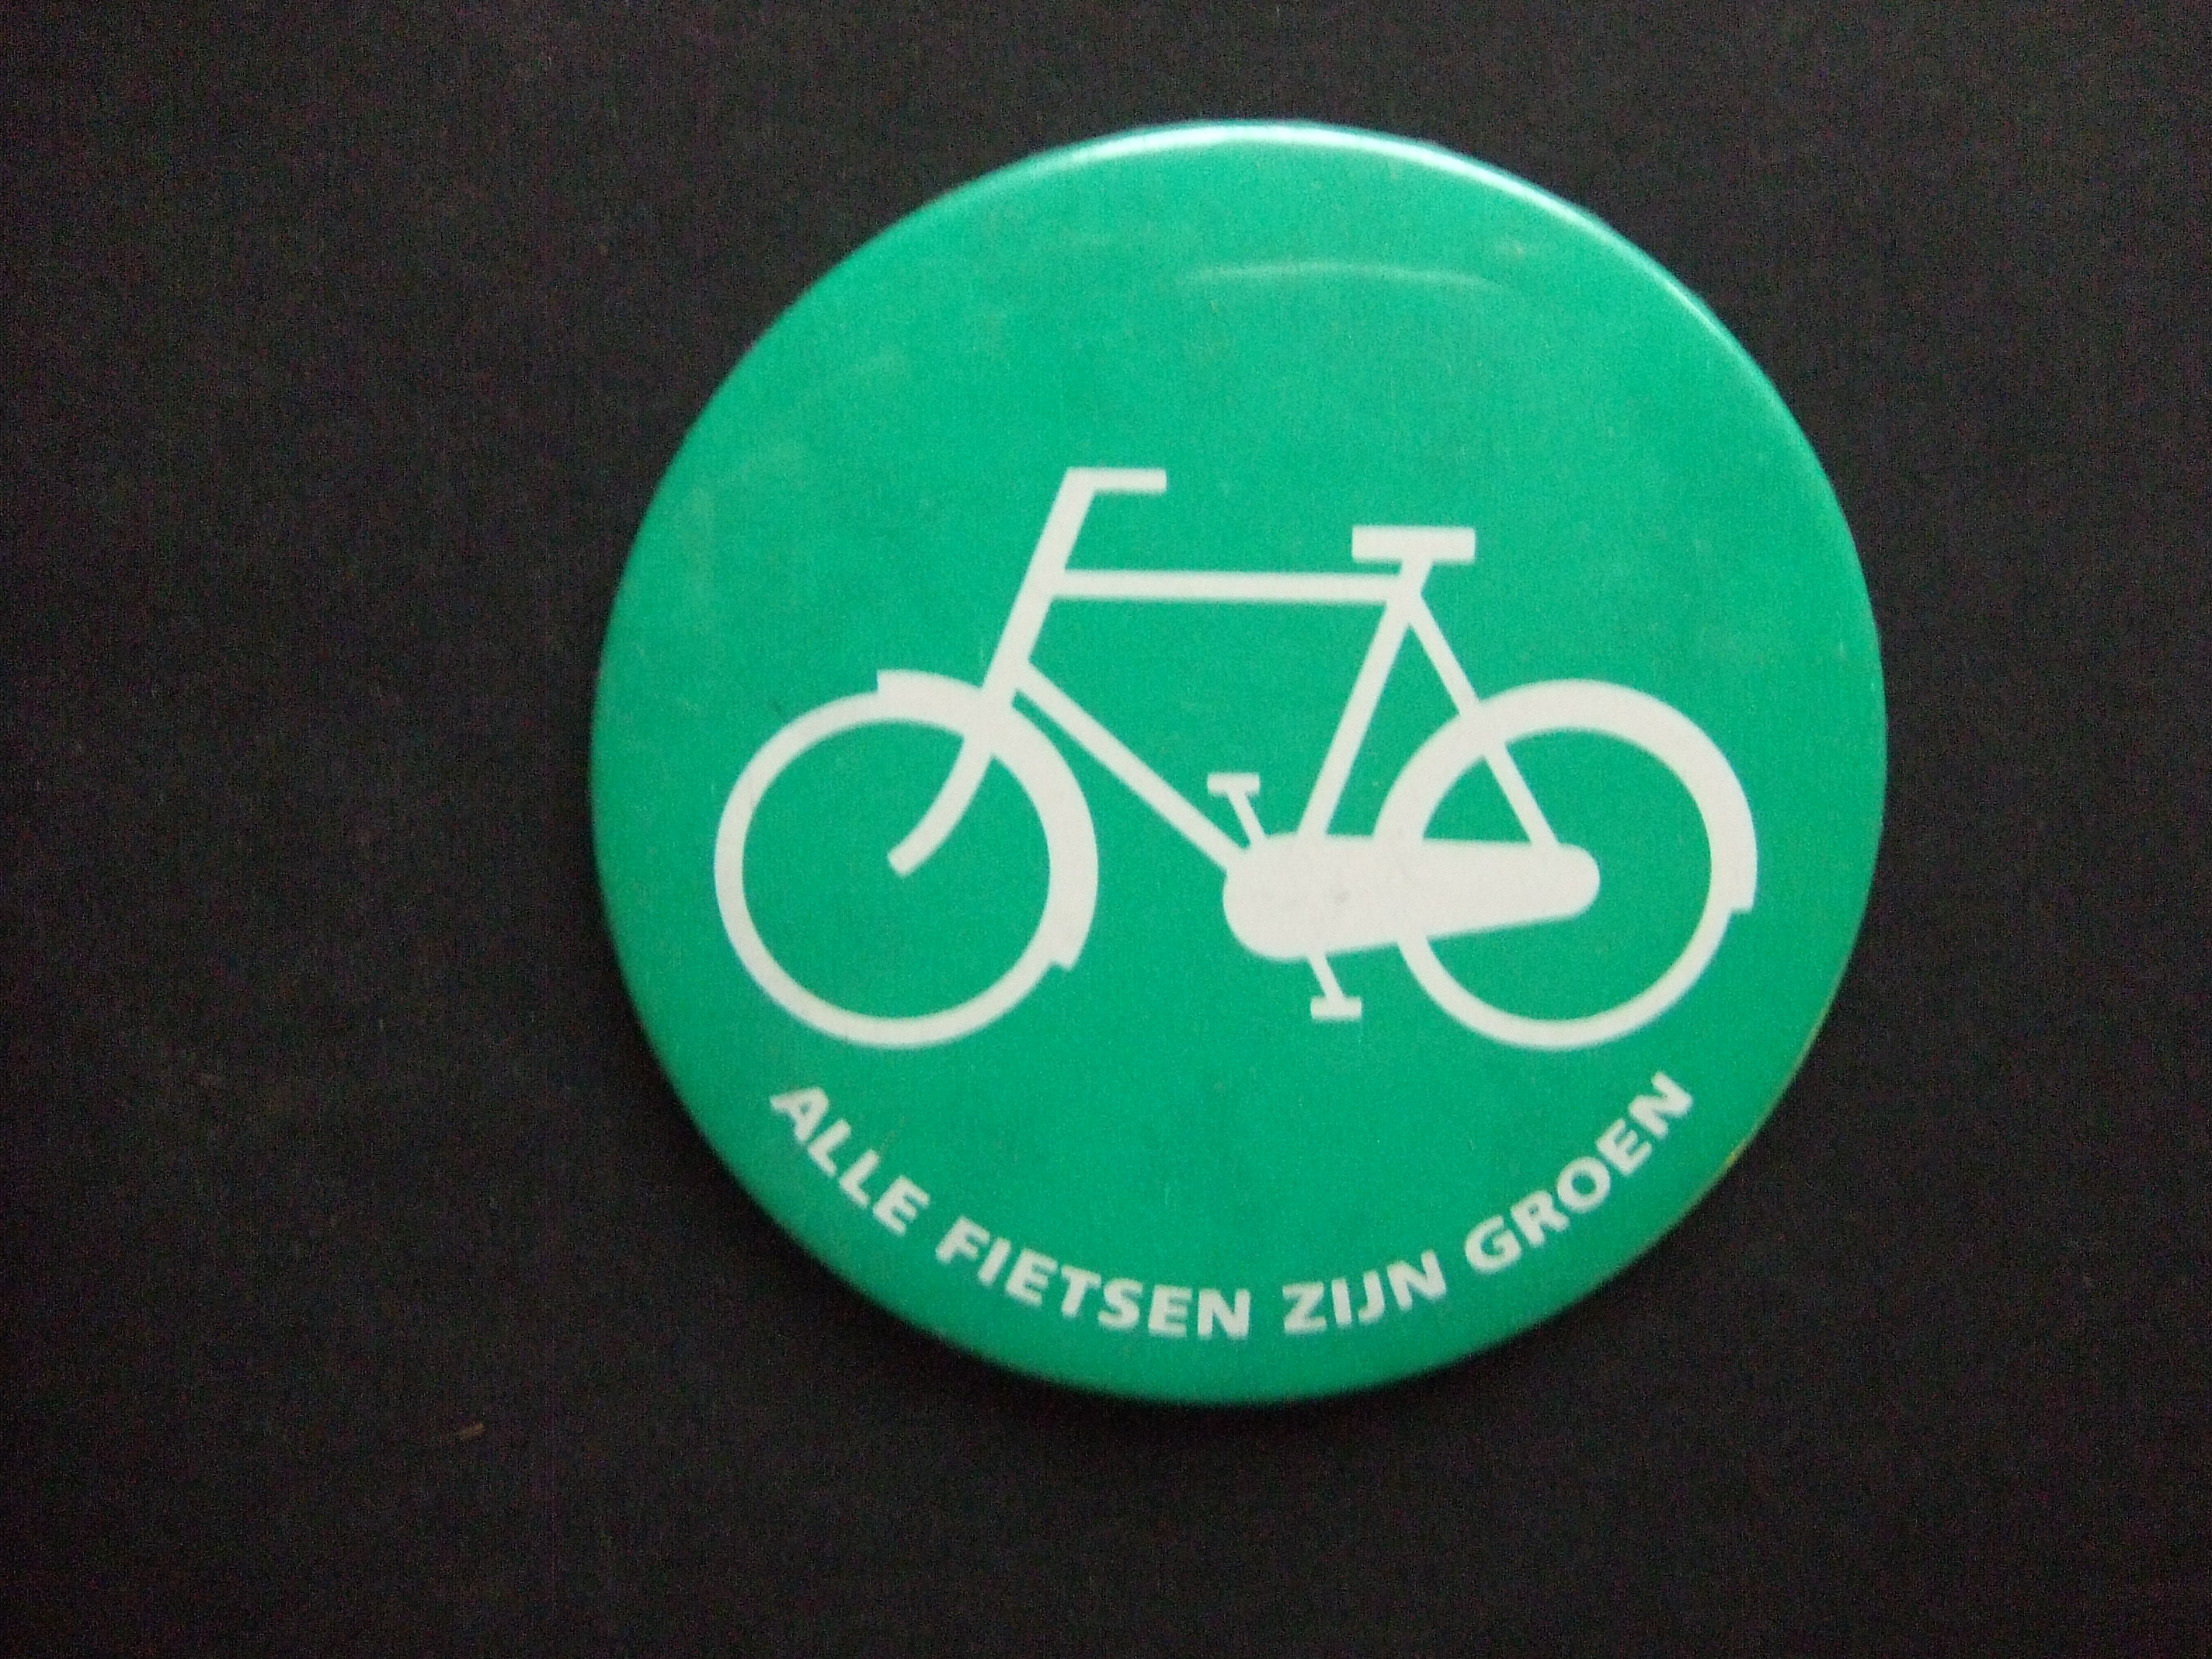 Groene fietsenplan alles is groen groot model